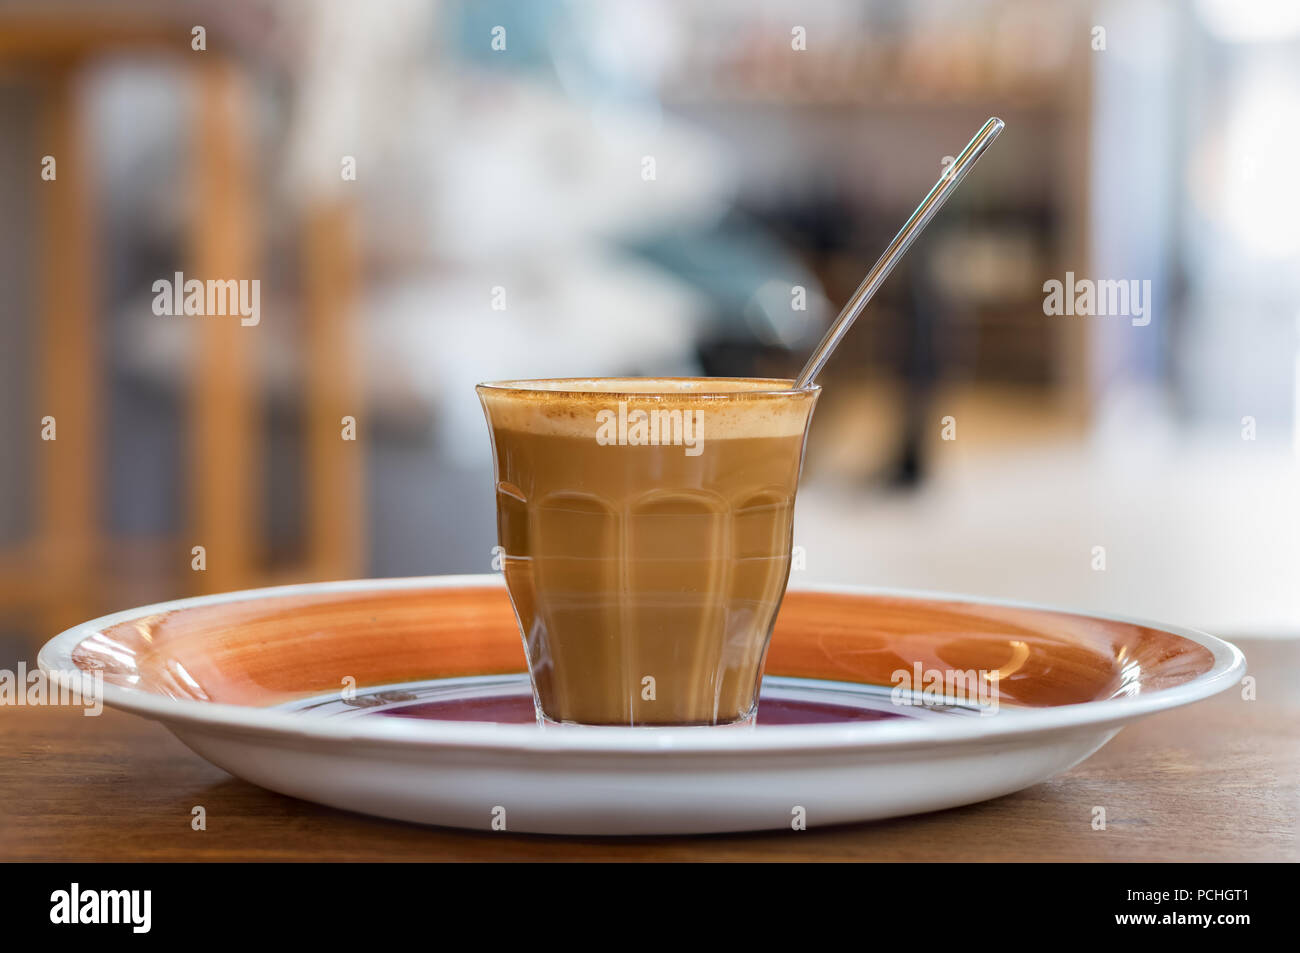 Un café chaud avec du lait sur un verre transparent avec une cuillère placée sur une assiette, libre. Banque D'Images